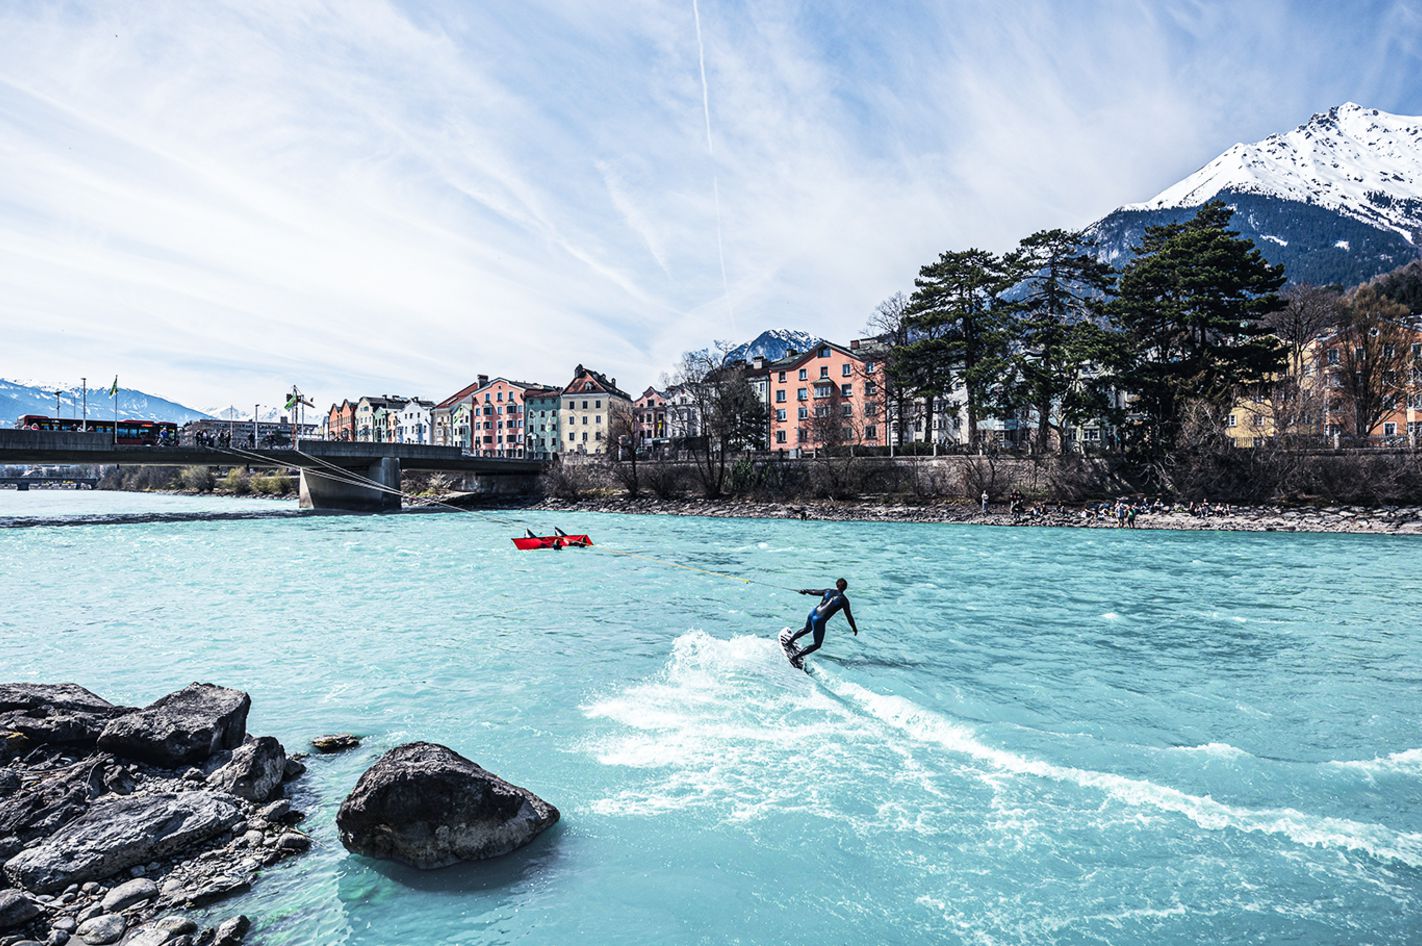 River Surfing in Innsbruck – Fortgeschrittene Session